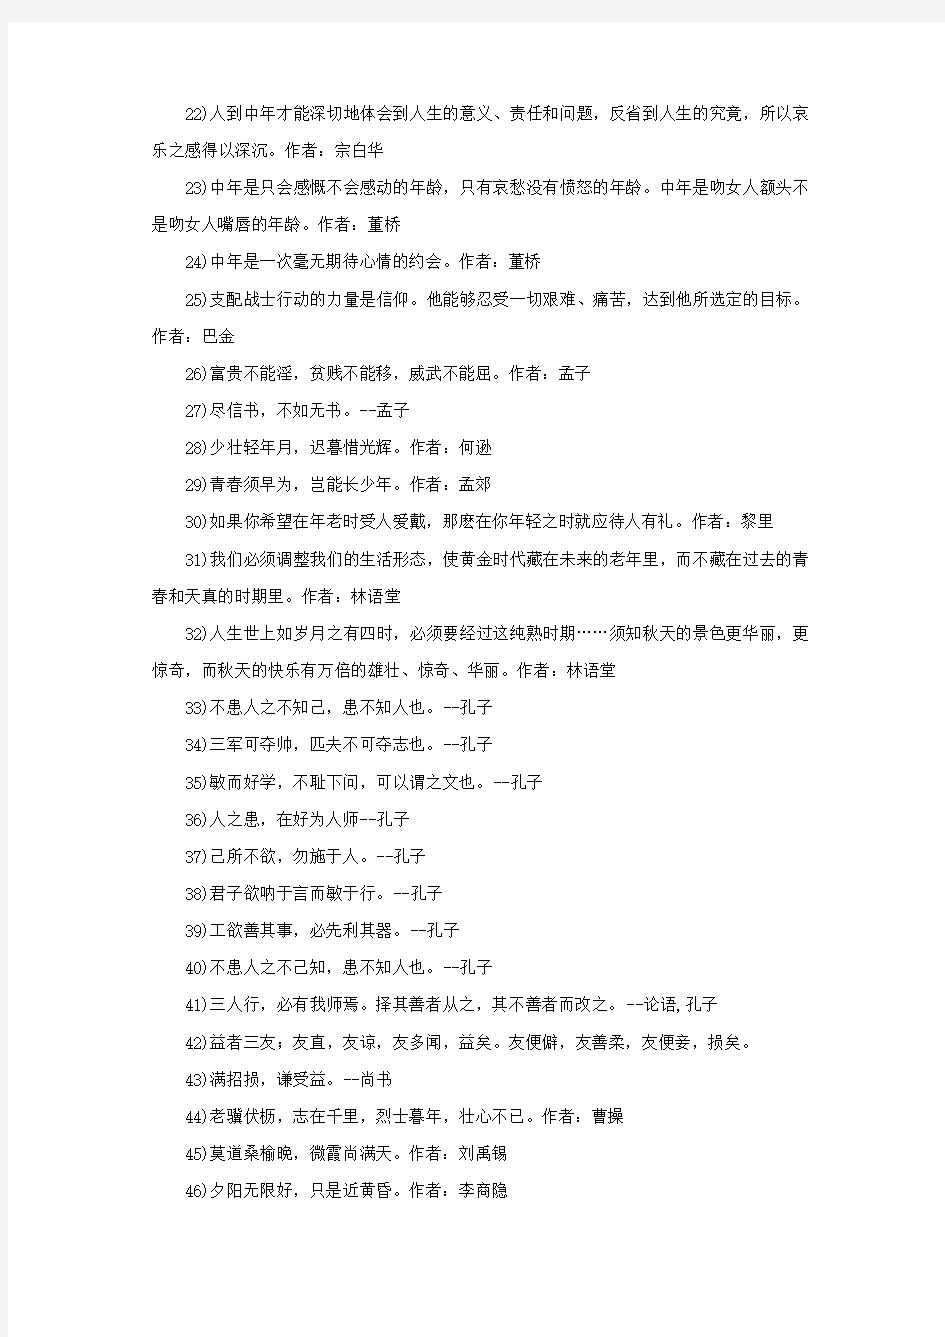 【高考作文素材】关于奋斗的150条中国名人名言(强推 免费)